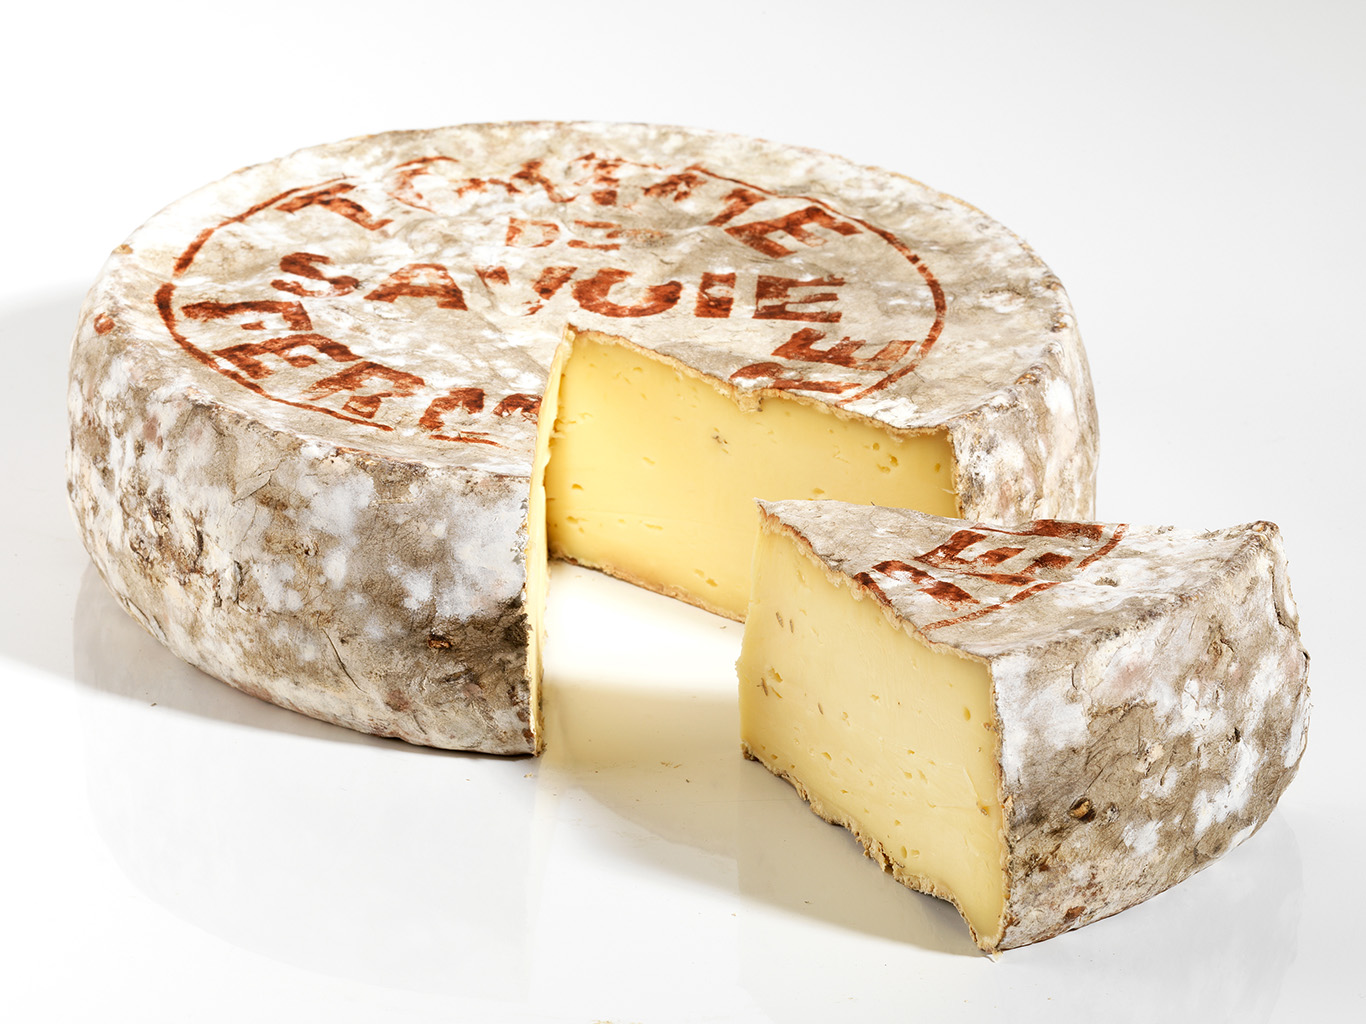 Sýr Tomme de Savoie má zpravidla nižší obsah tuku